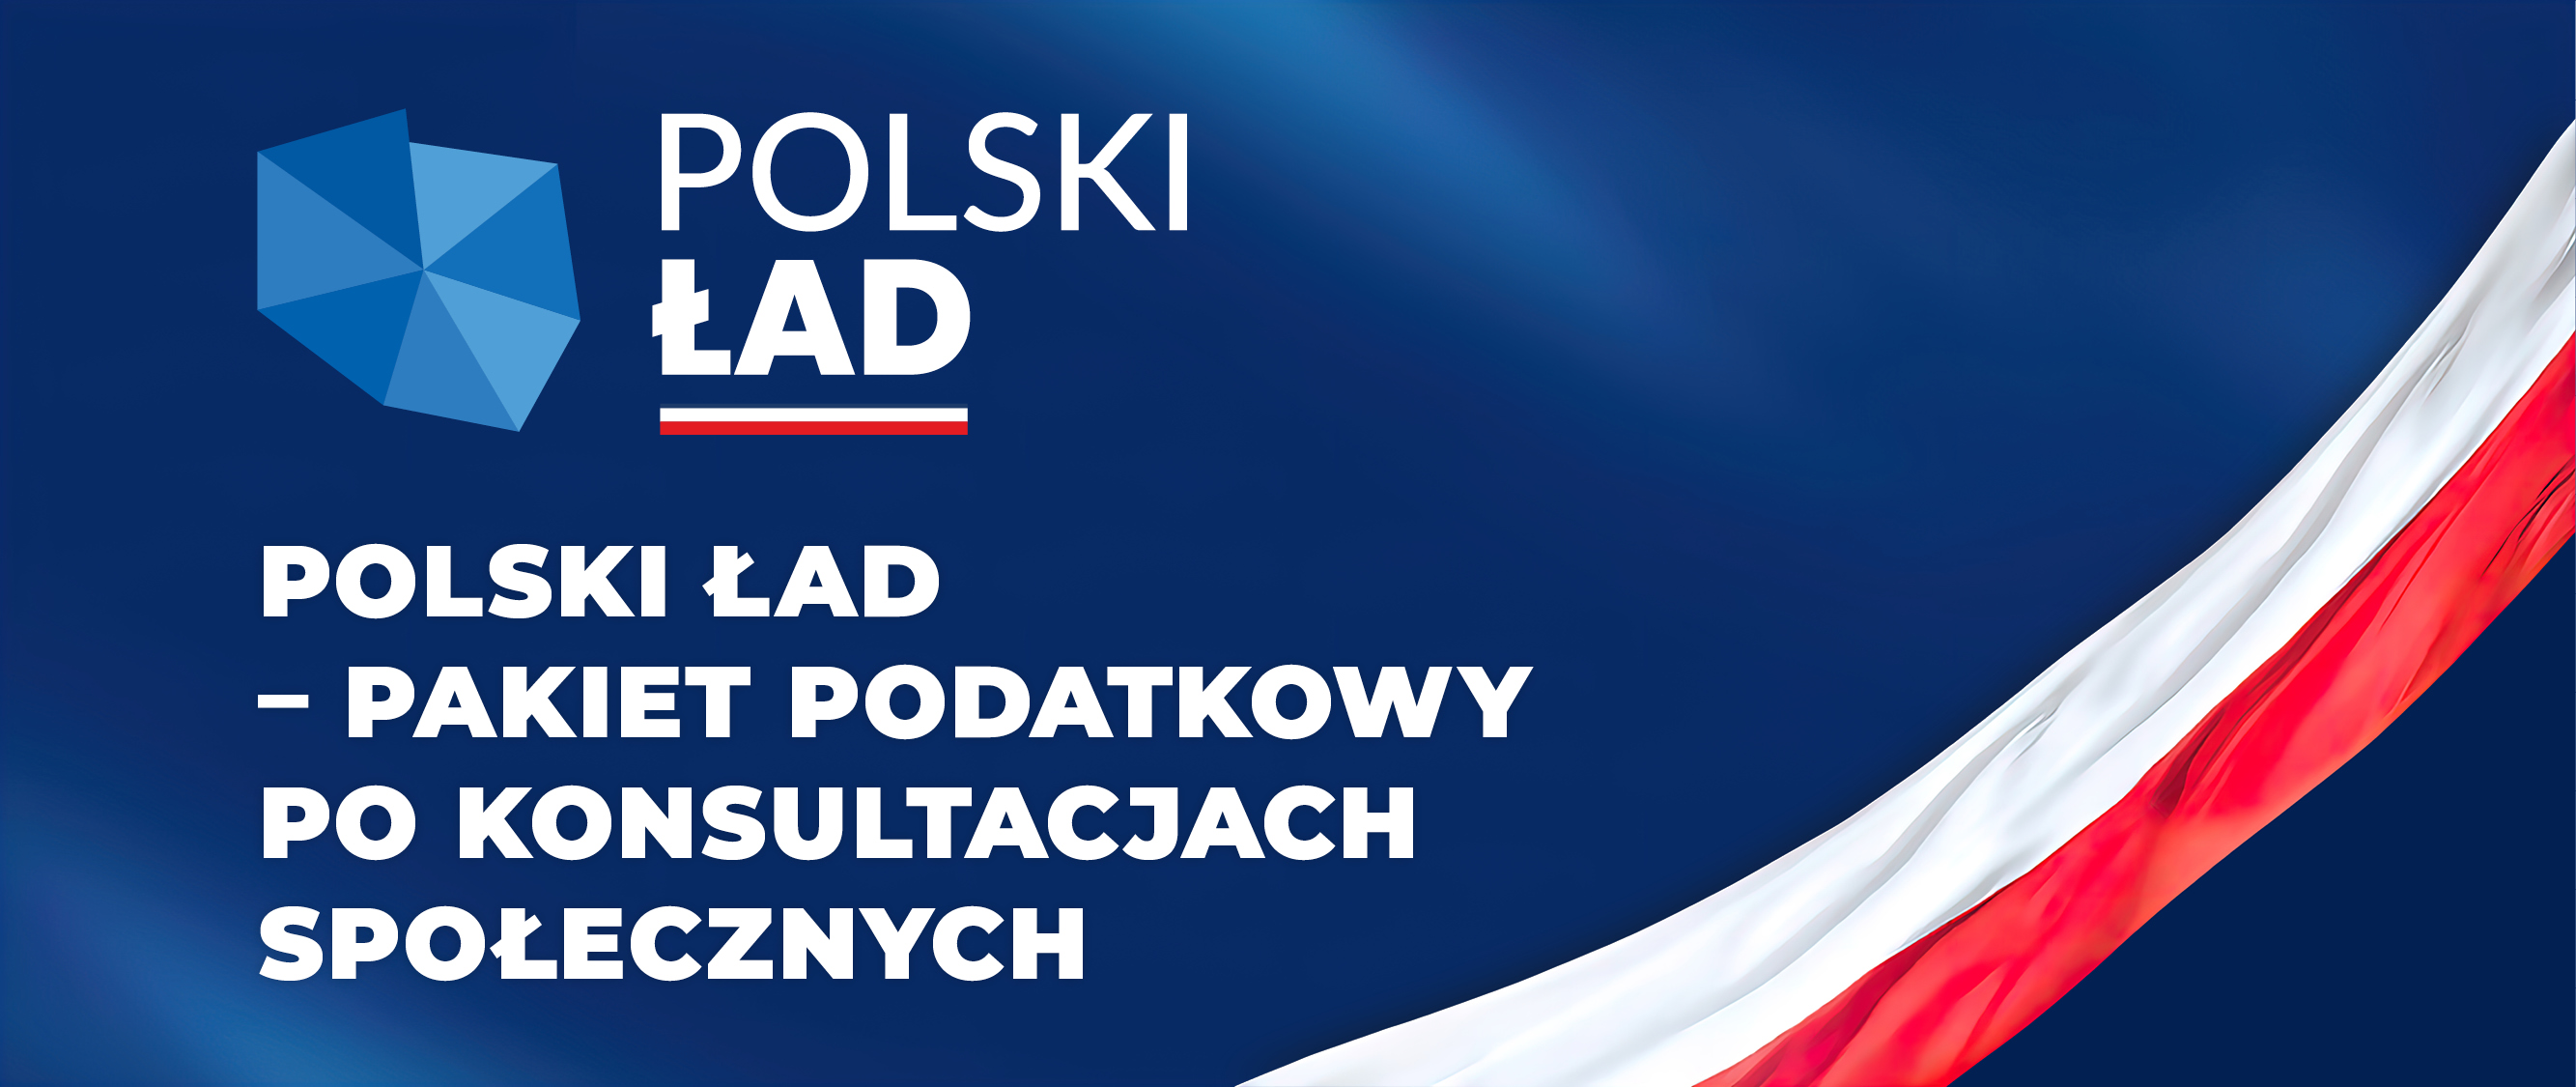 Kontur mapy Polski i napis Polski Ład – pakiet podatkowy po konsultacjach społecznych